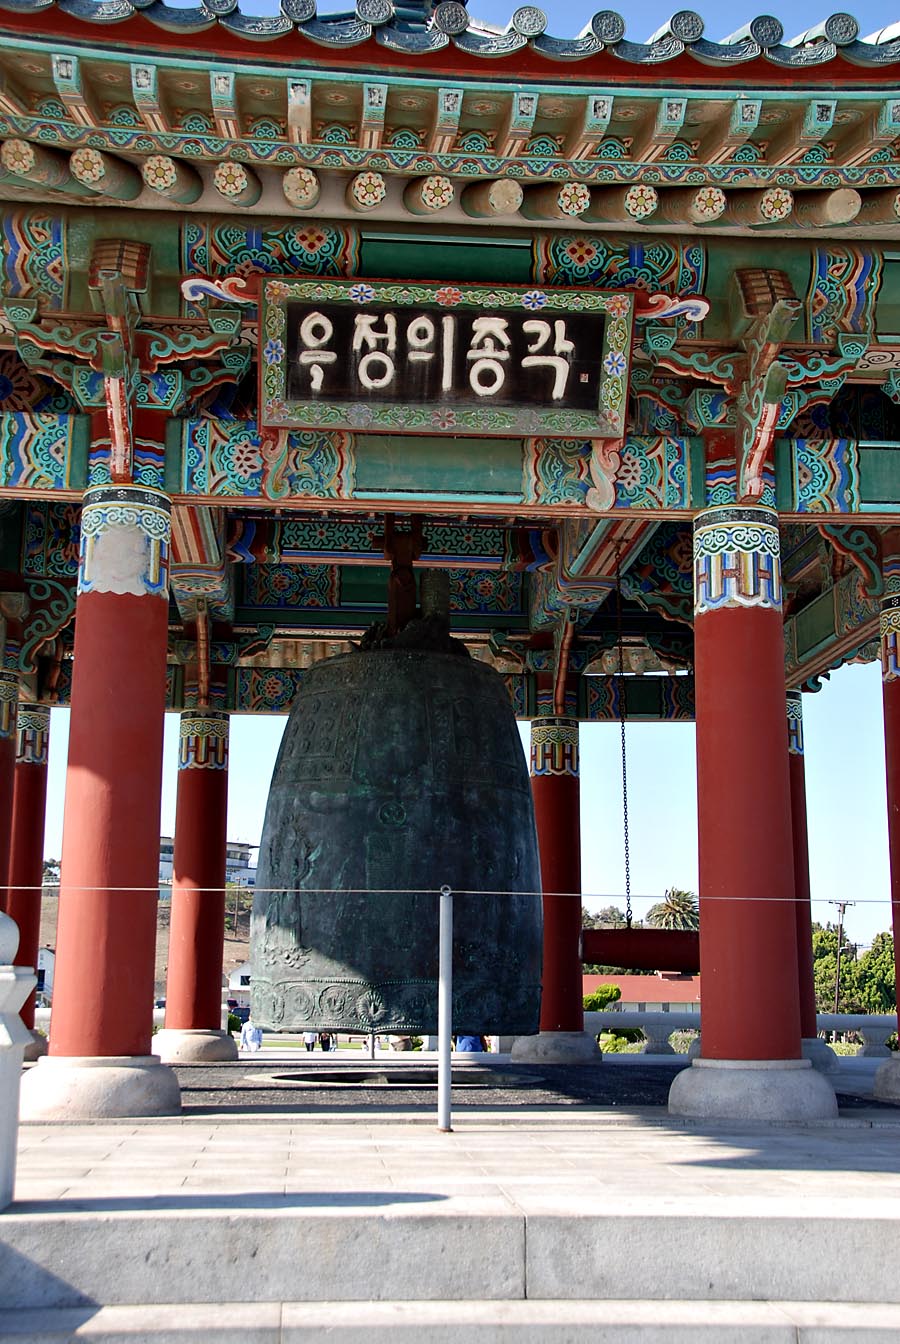 The Korean Bell